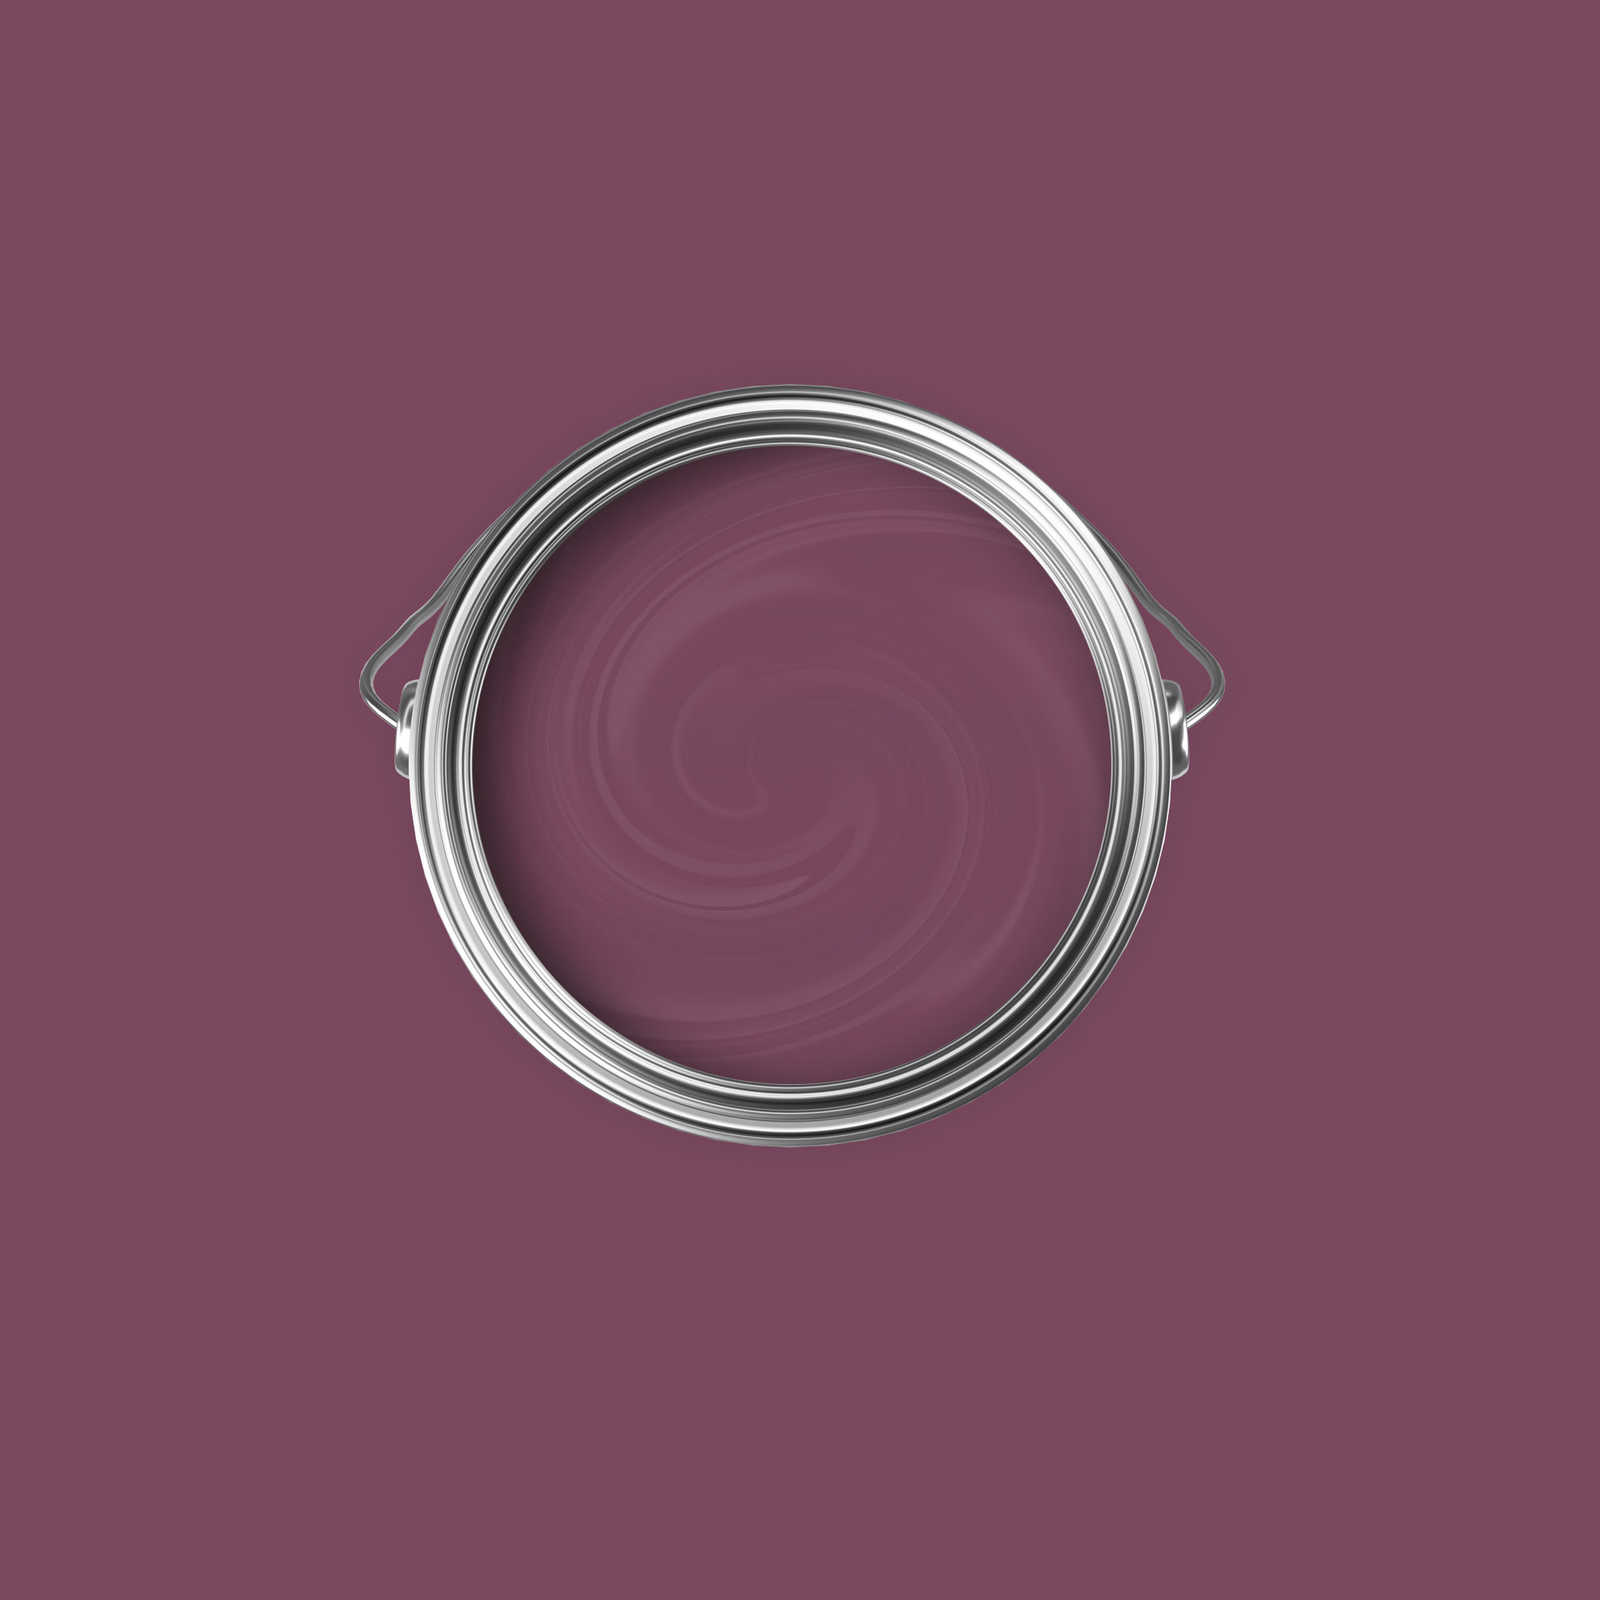             Premium Wandfarbe kräftige Beere »Beautiful Berry« NW212 – 2,5 Liter
        